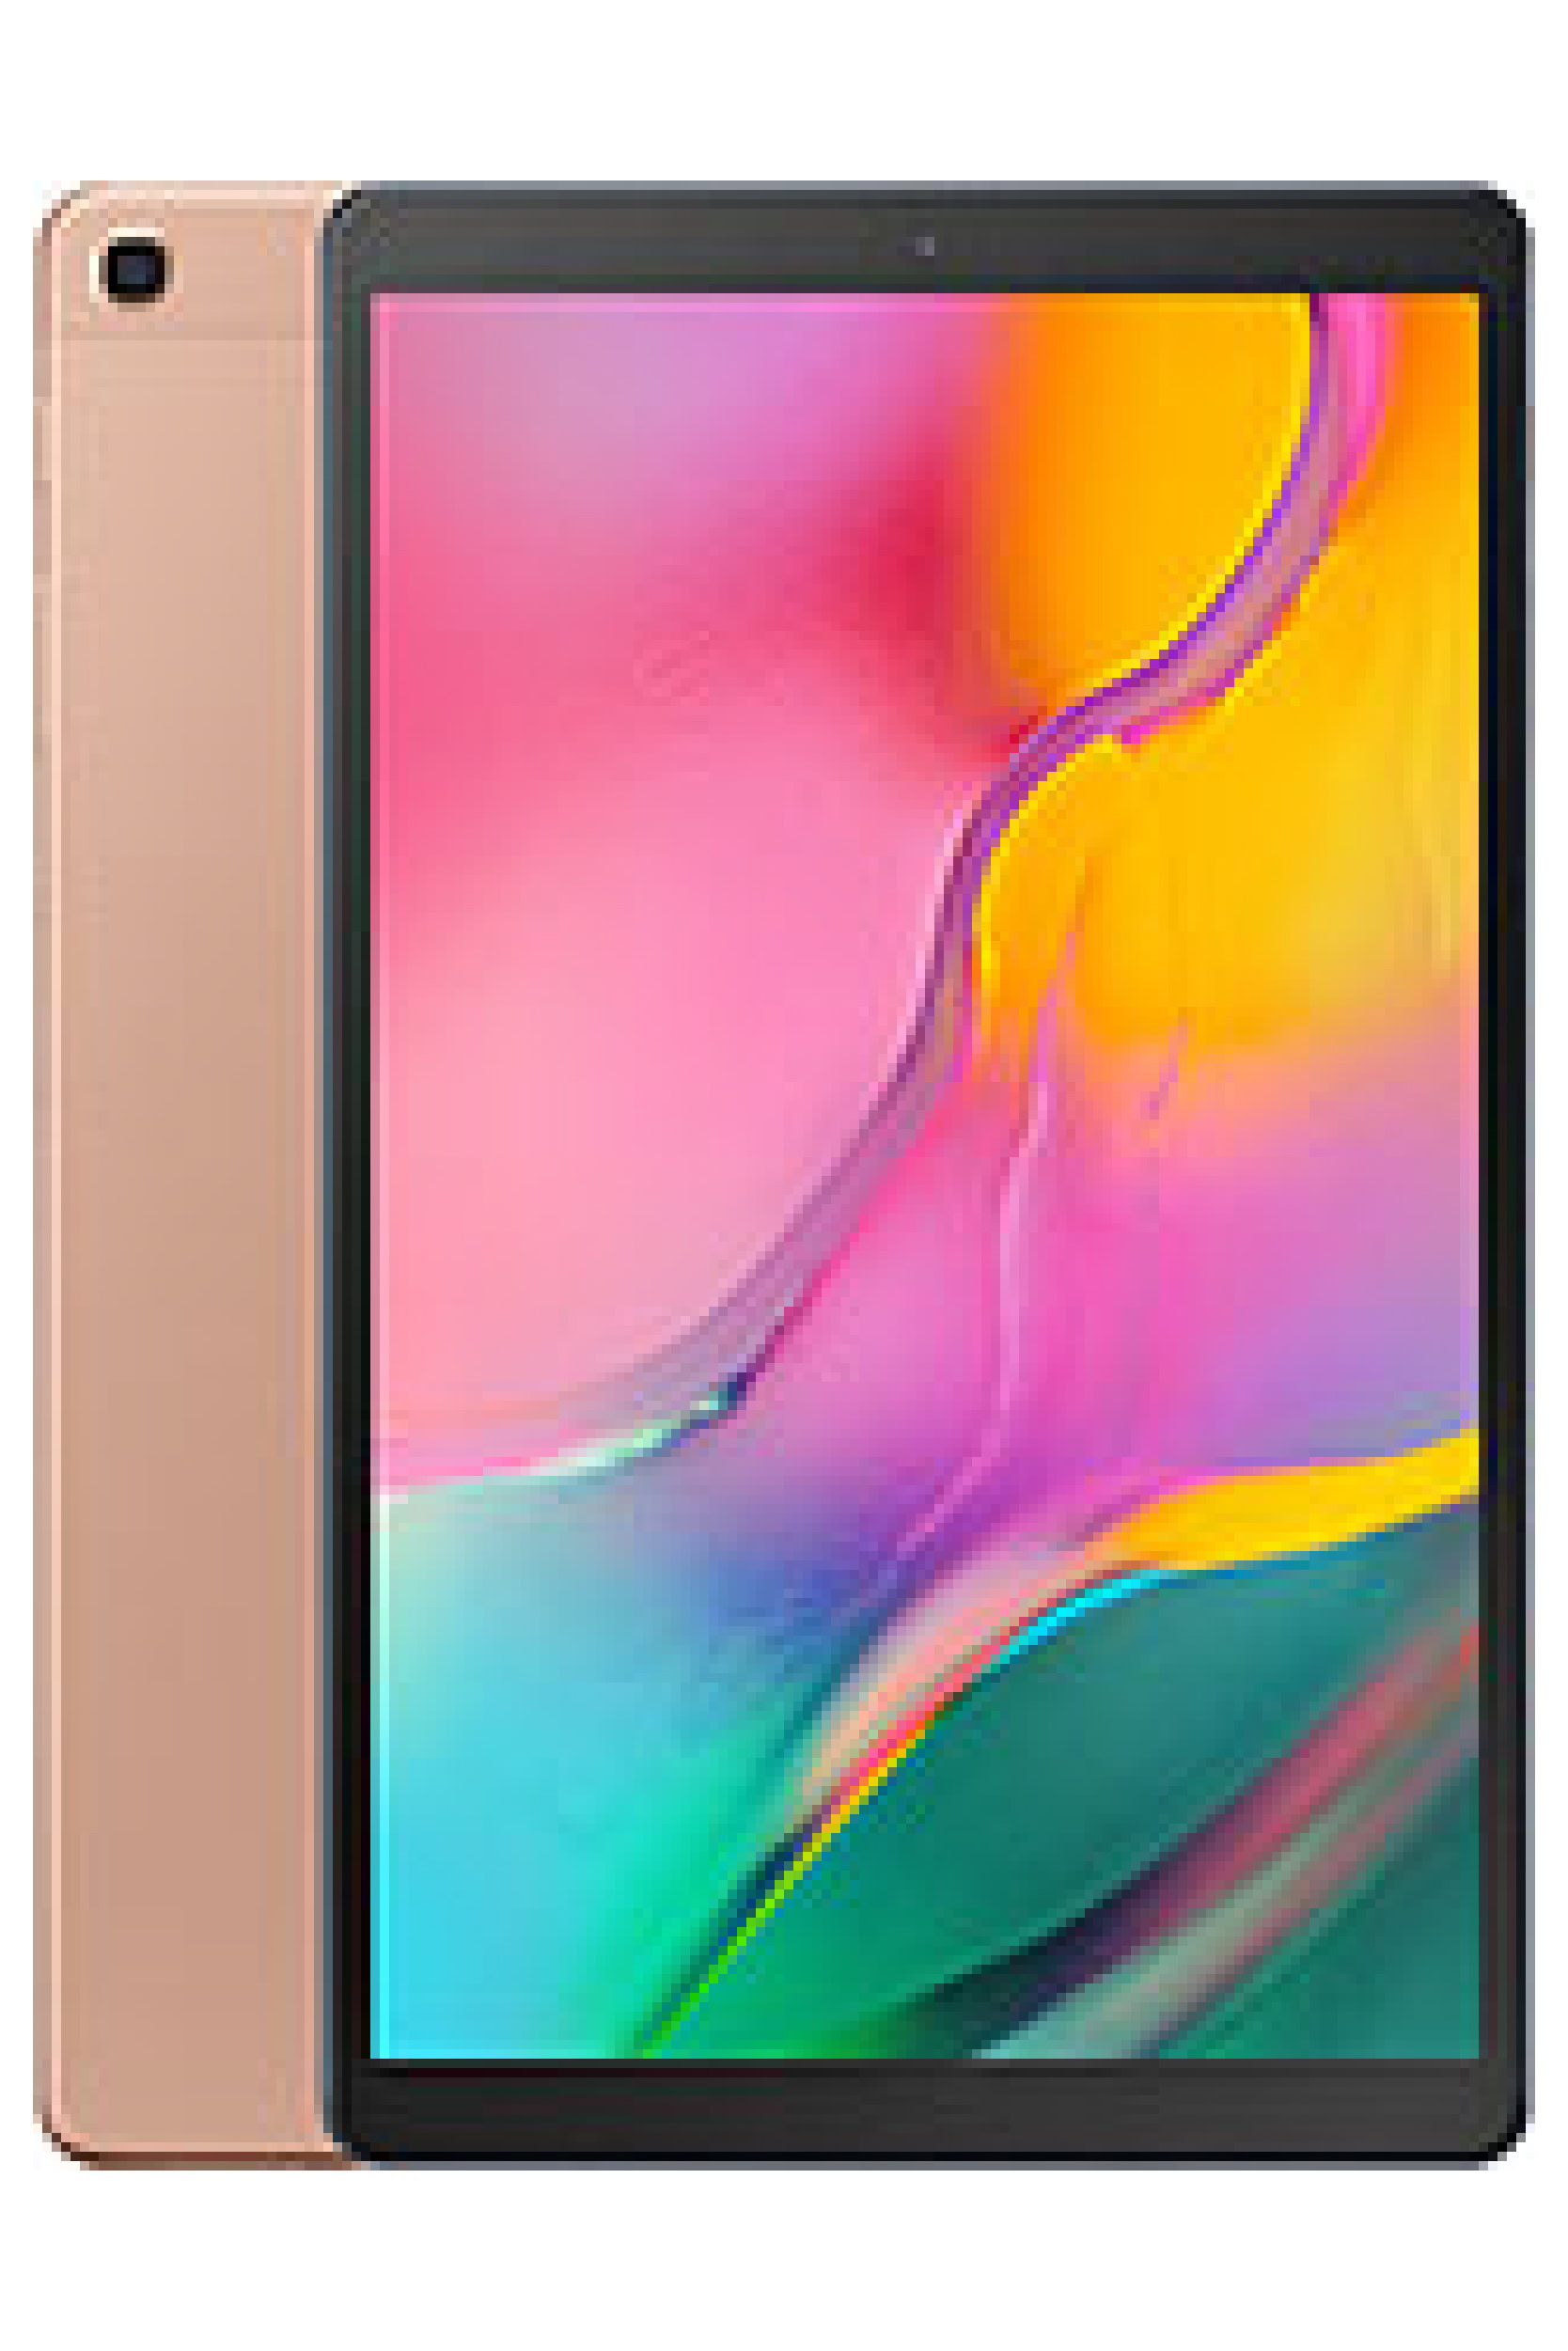 Samsung Galaxy Tab A 10.1 (2019) Price in Pakistan & Specs | ProPakistani